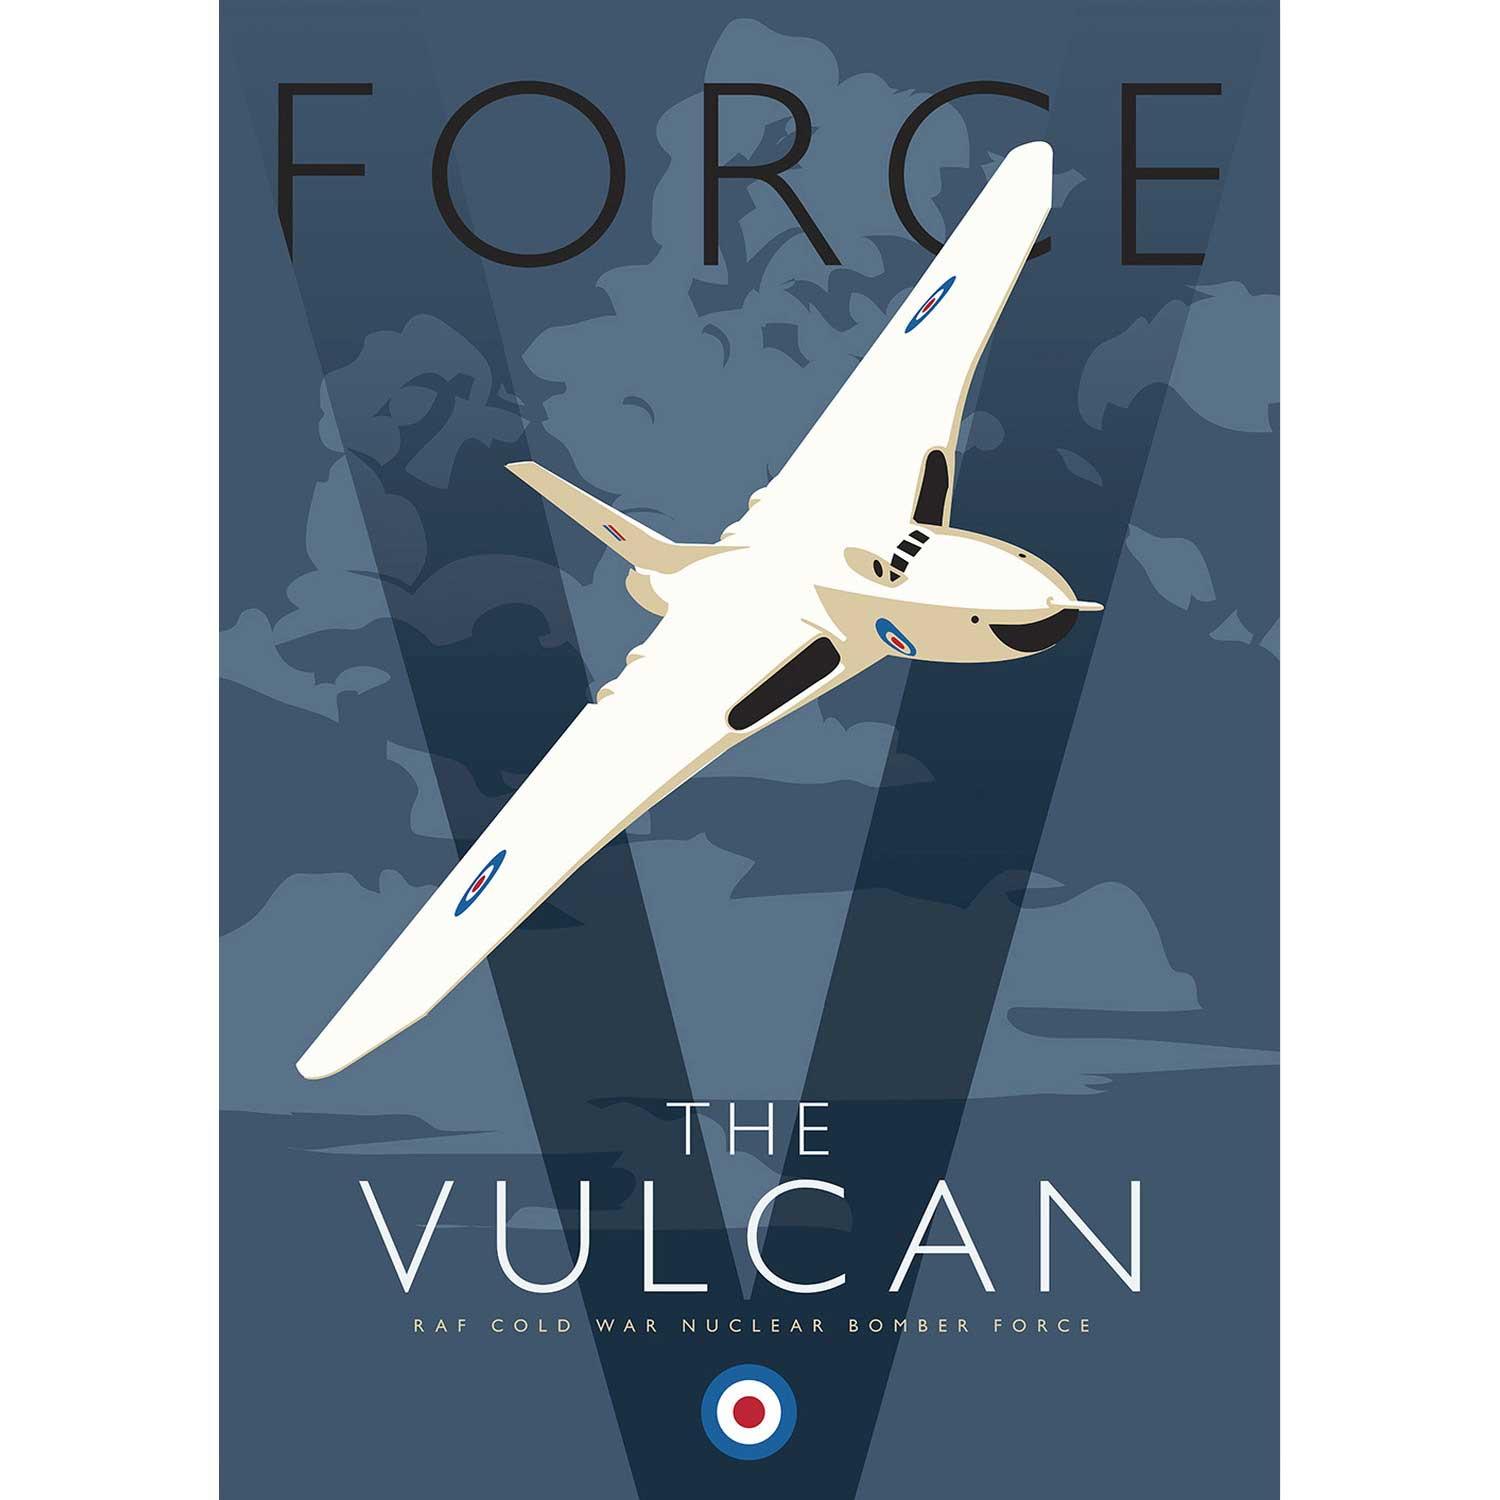 The Vulcan by Peter McDermott